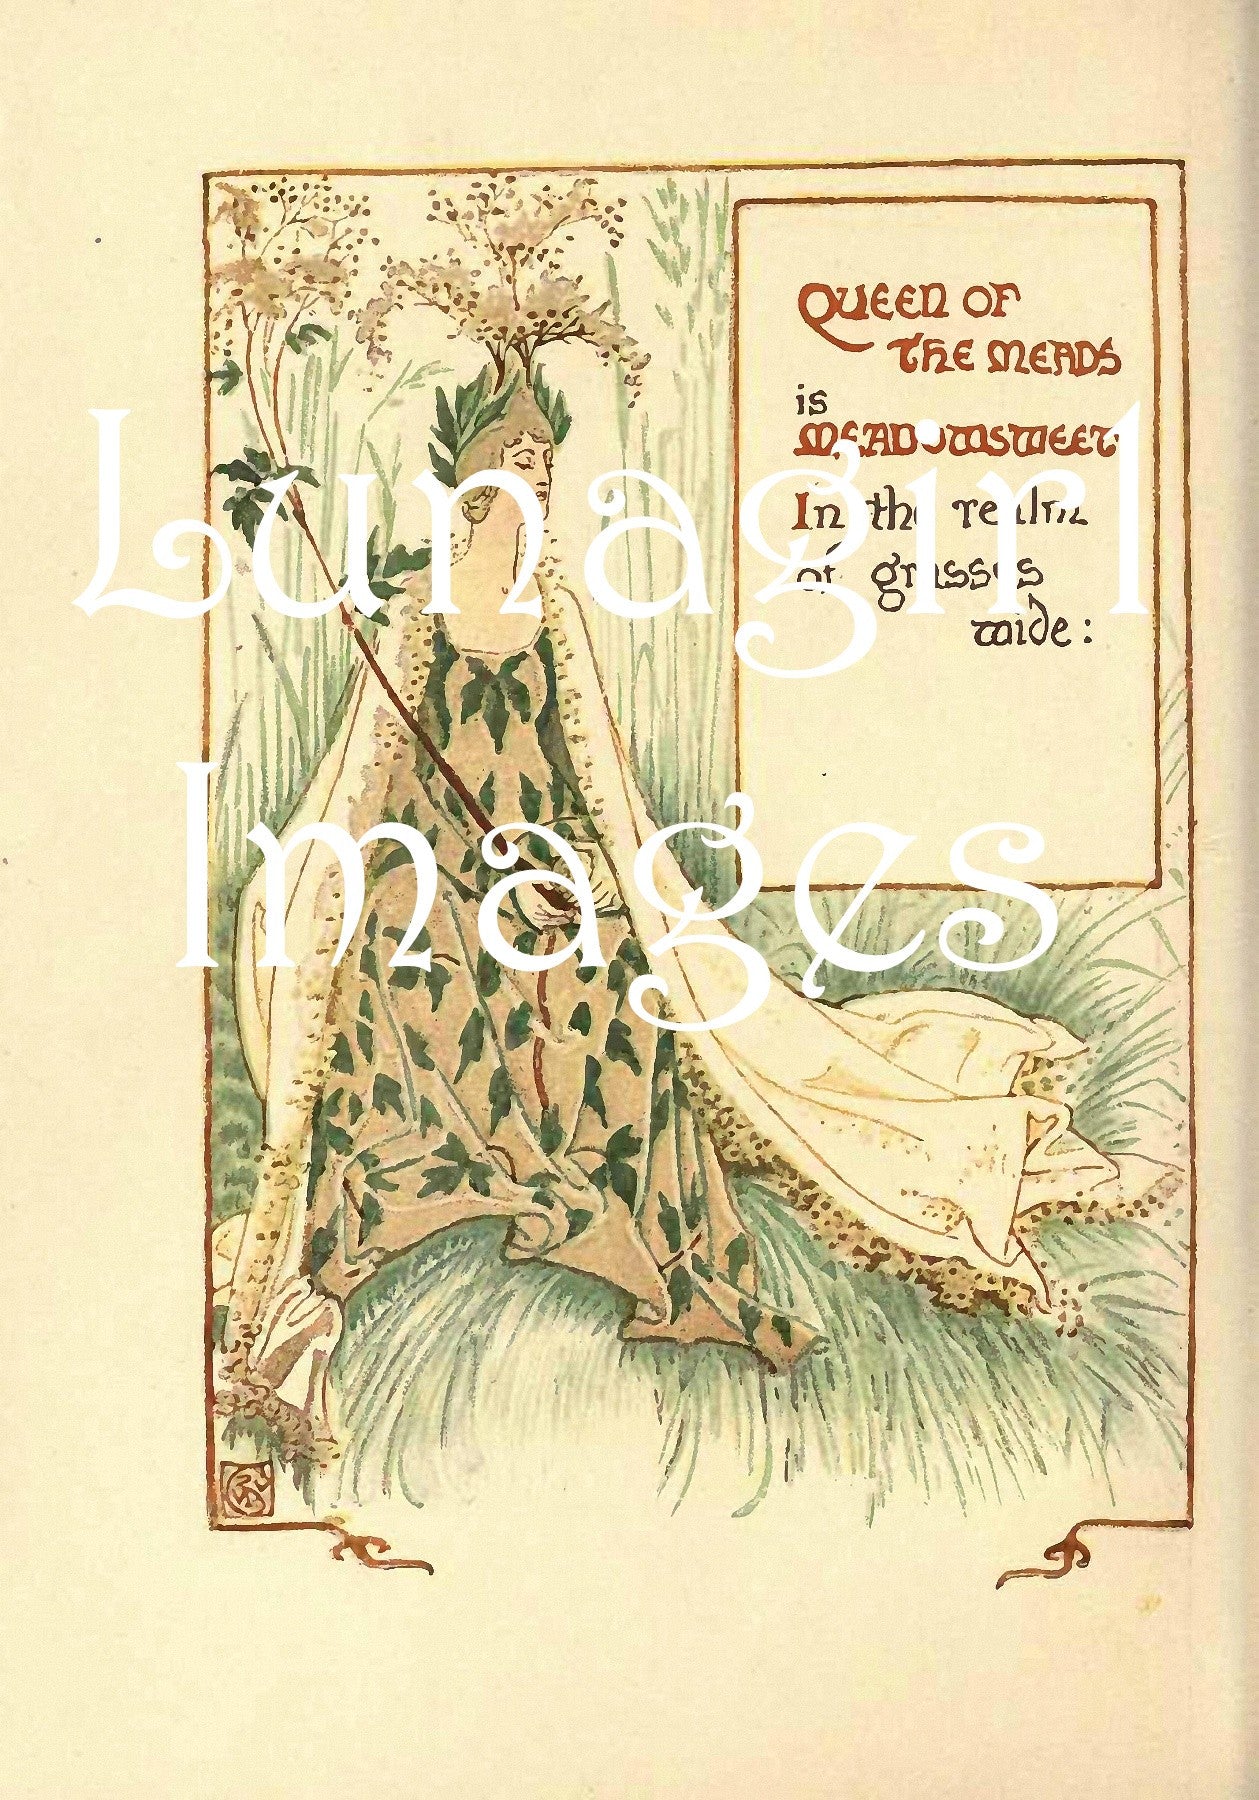 Walter Crane Illustrated Books: 100s of Images - Lunagirl